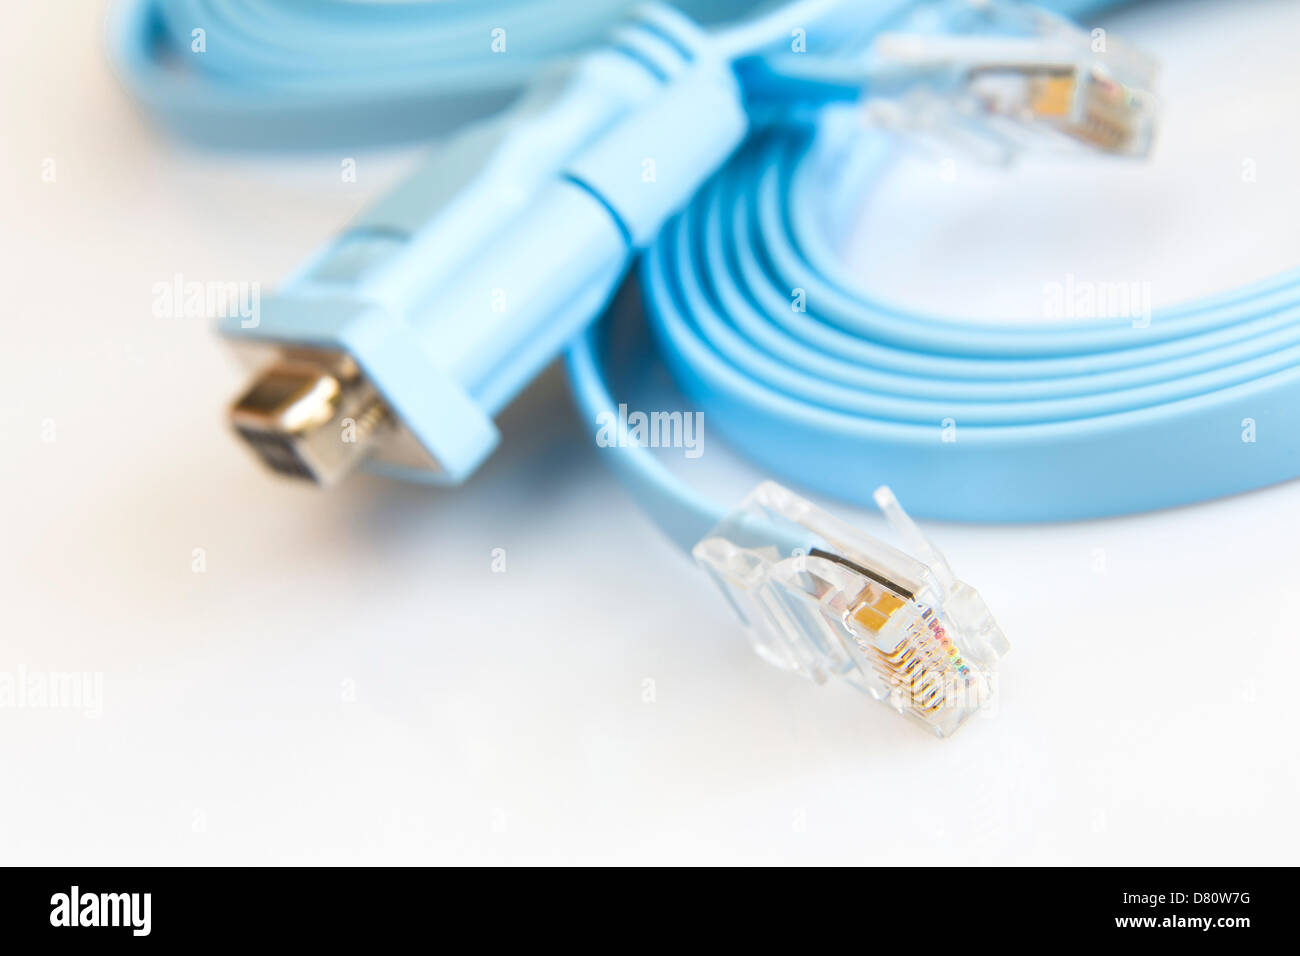 Soporte de cable de red plana para configurar los routers, switches y otros dispositivos de red Foto de stock